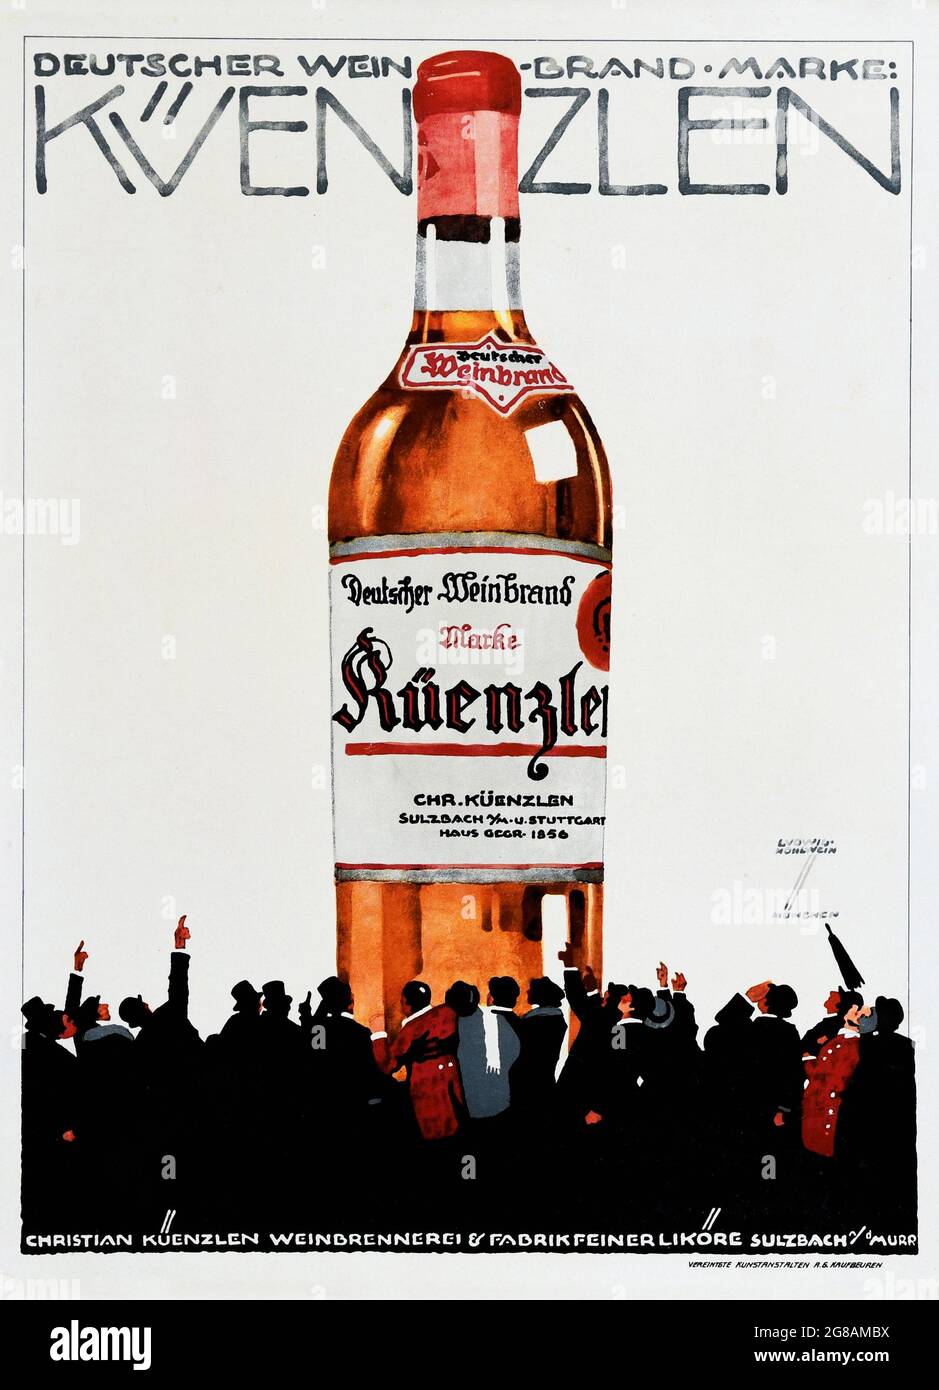 KUENZLEN DEUTSCHER WEIN, Kunst von LUDWIG HOHLWEIN. Vintage-Werbung für Alkohol. Alte Zeiten Werbung. Stockfoto